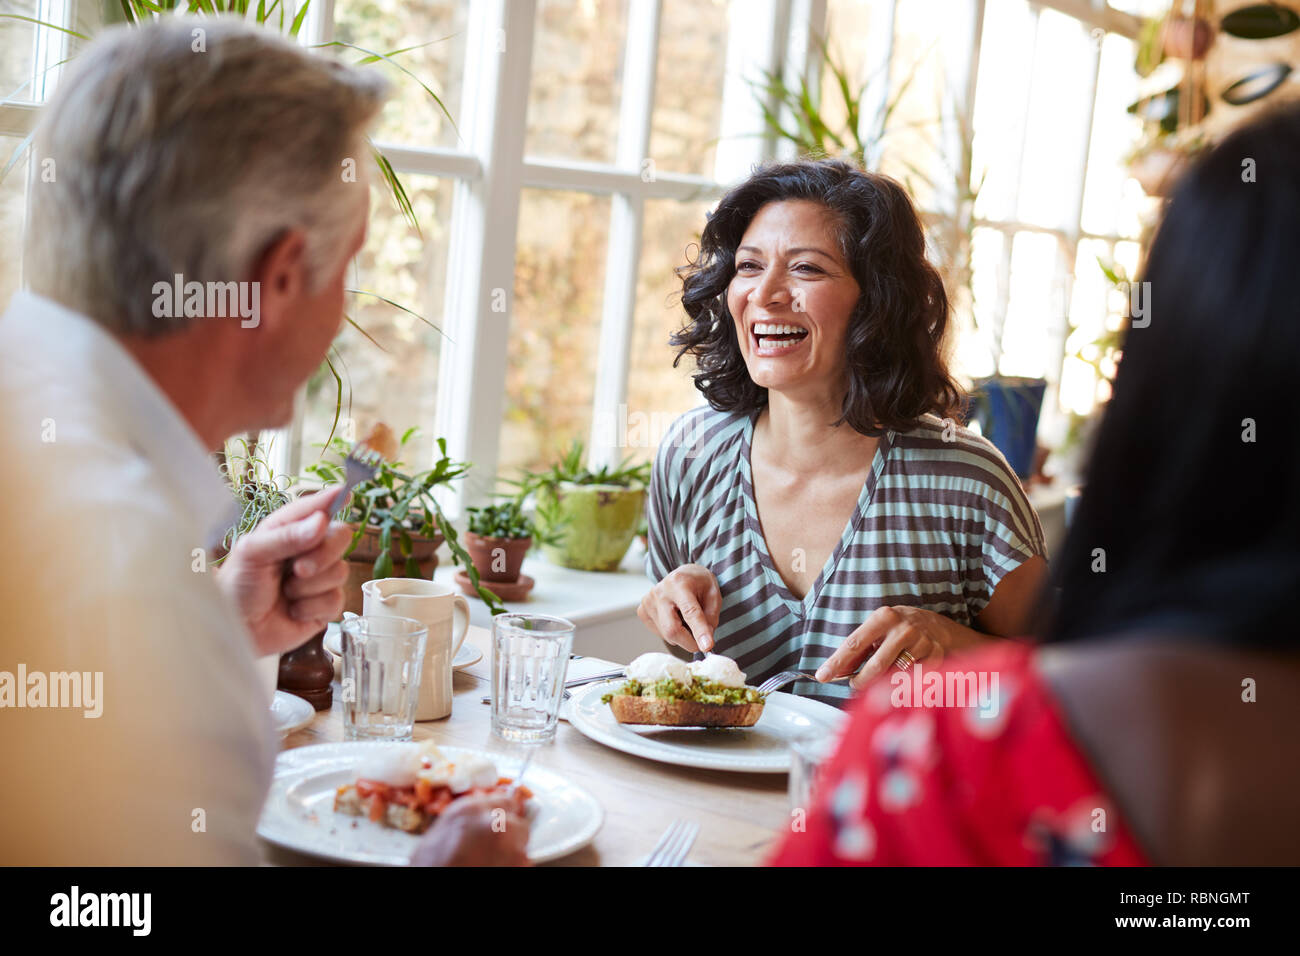 Lachende Frau Lachen mit männlichen Freund in einem Cafe, in der Nähe Stockfoto